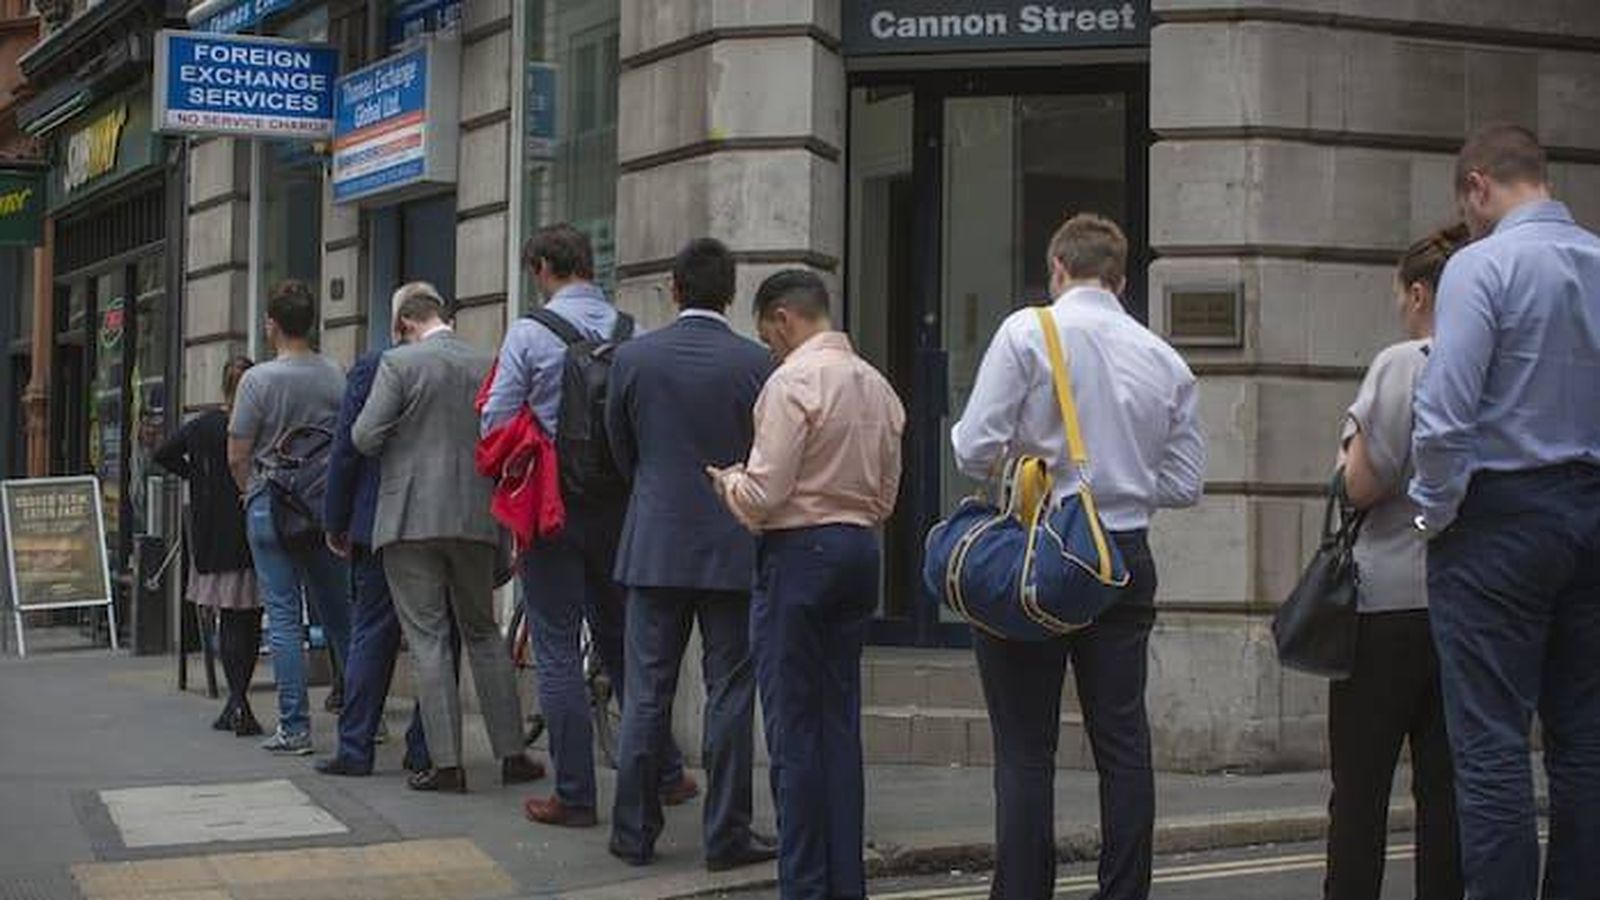 Foto: Británicos haciendo cola para cambiar divisas. (Financial Times)